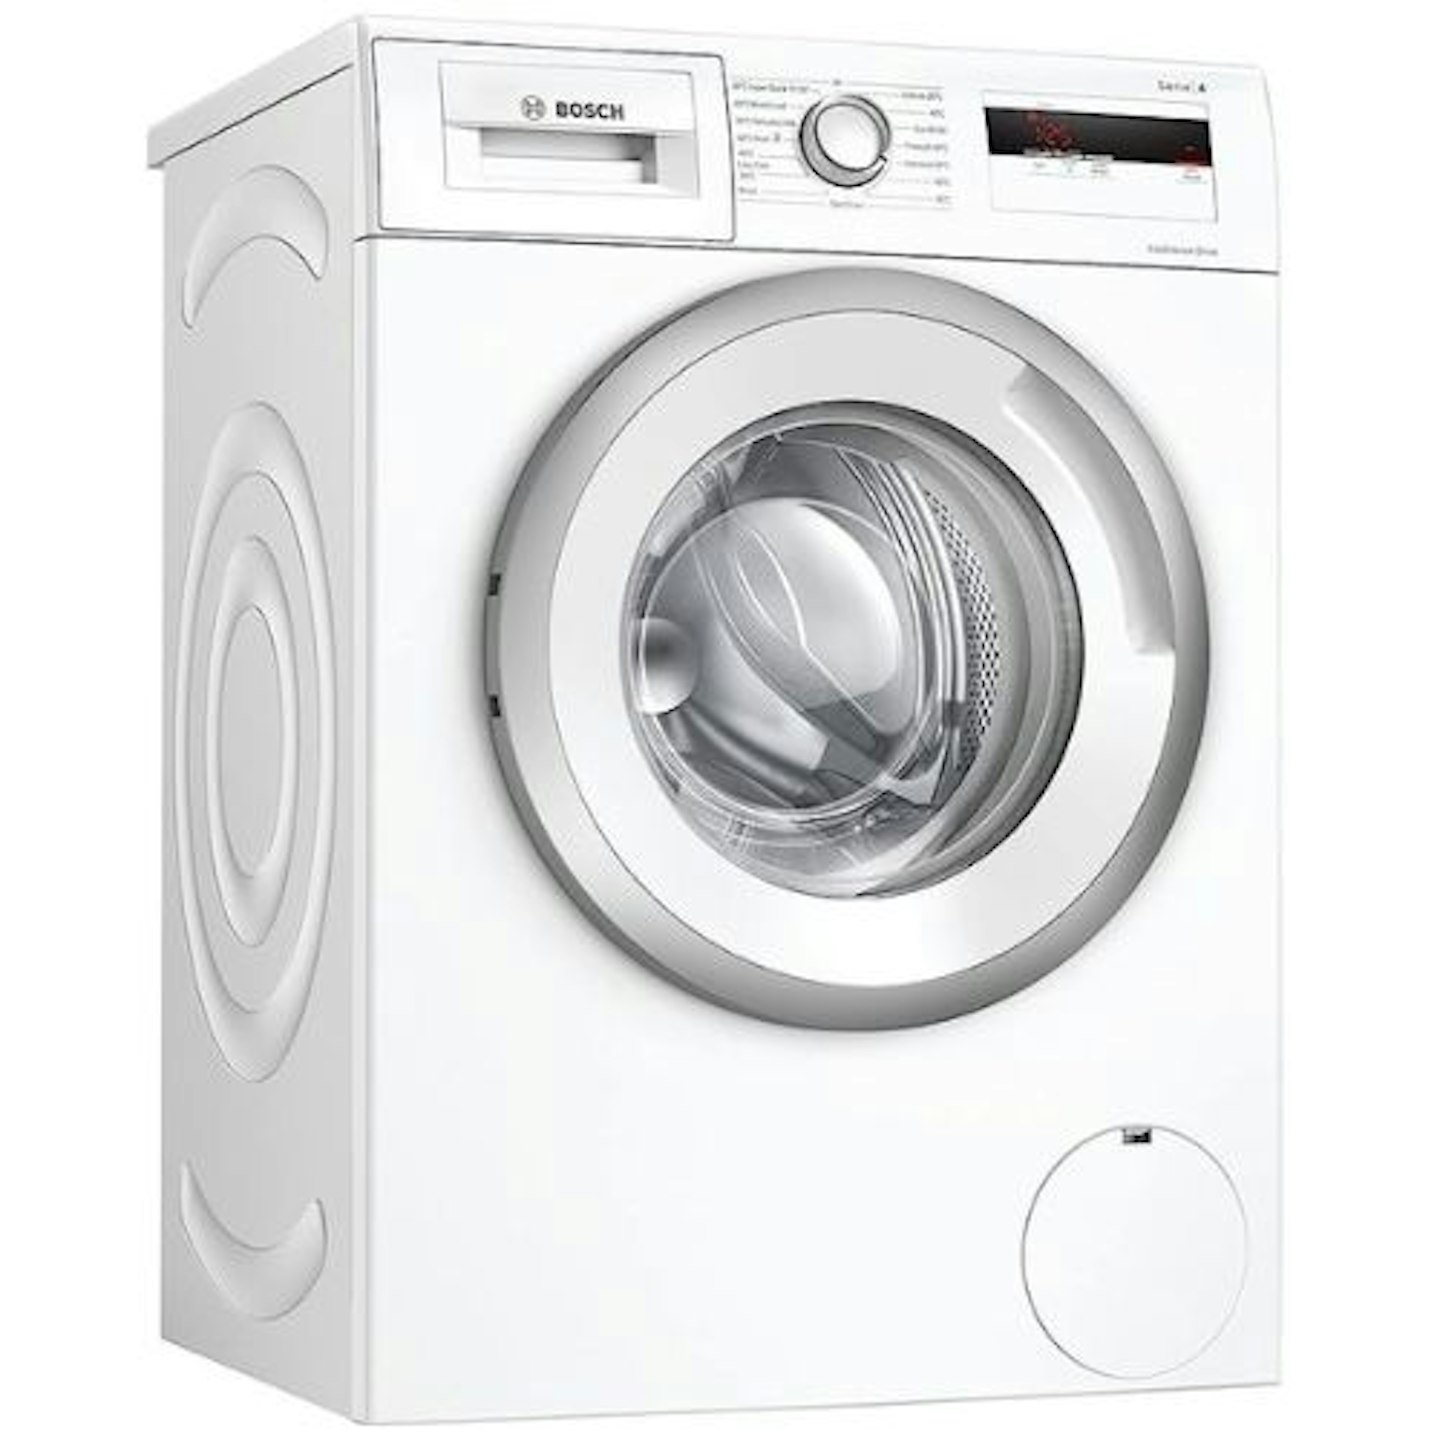 Bosch Serie 4 Freestanding Washing Machine